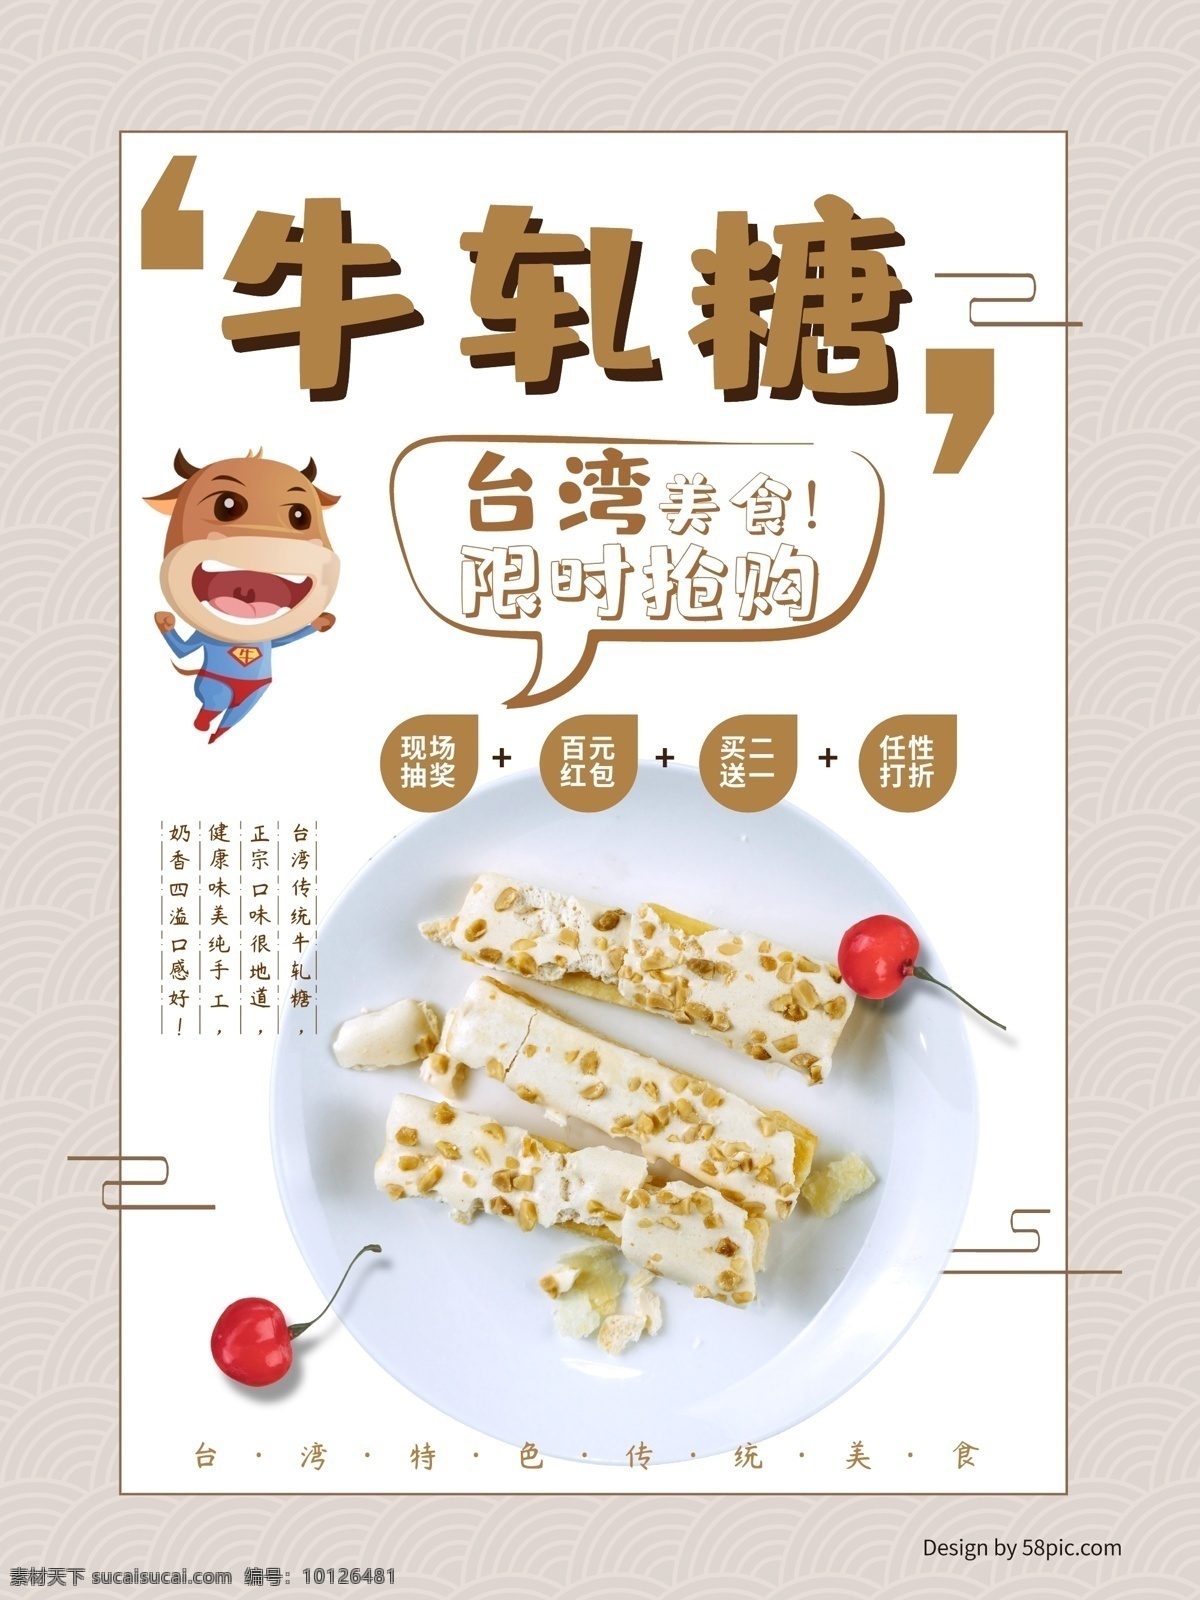 台湾 牛轧糖 美食 海报 食品 糖果 促销 宣传